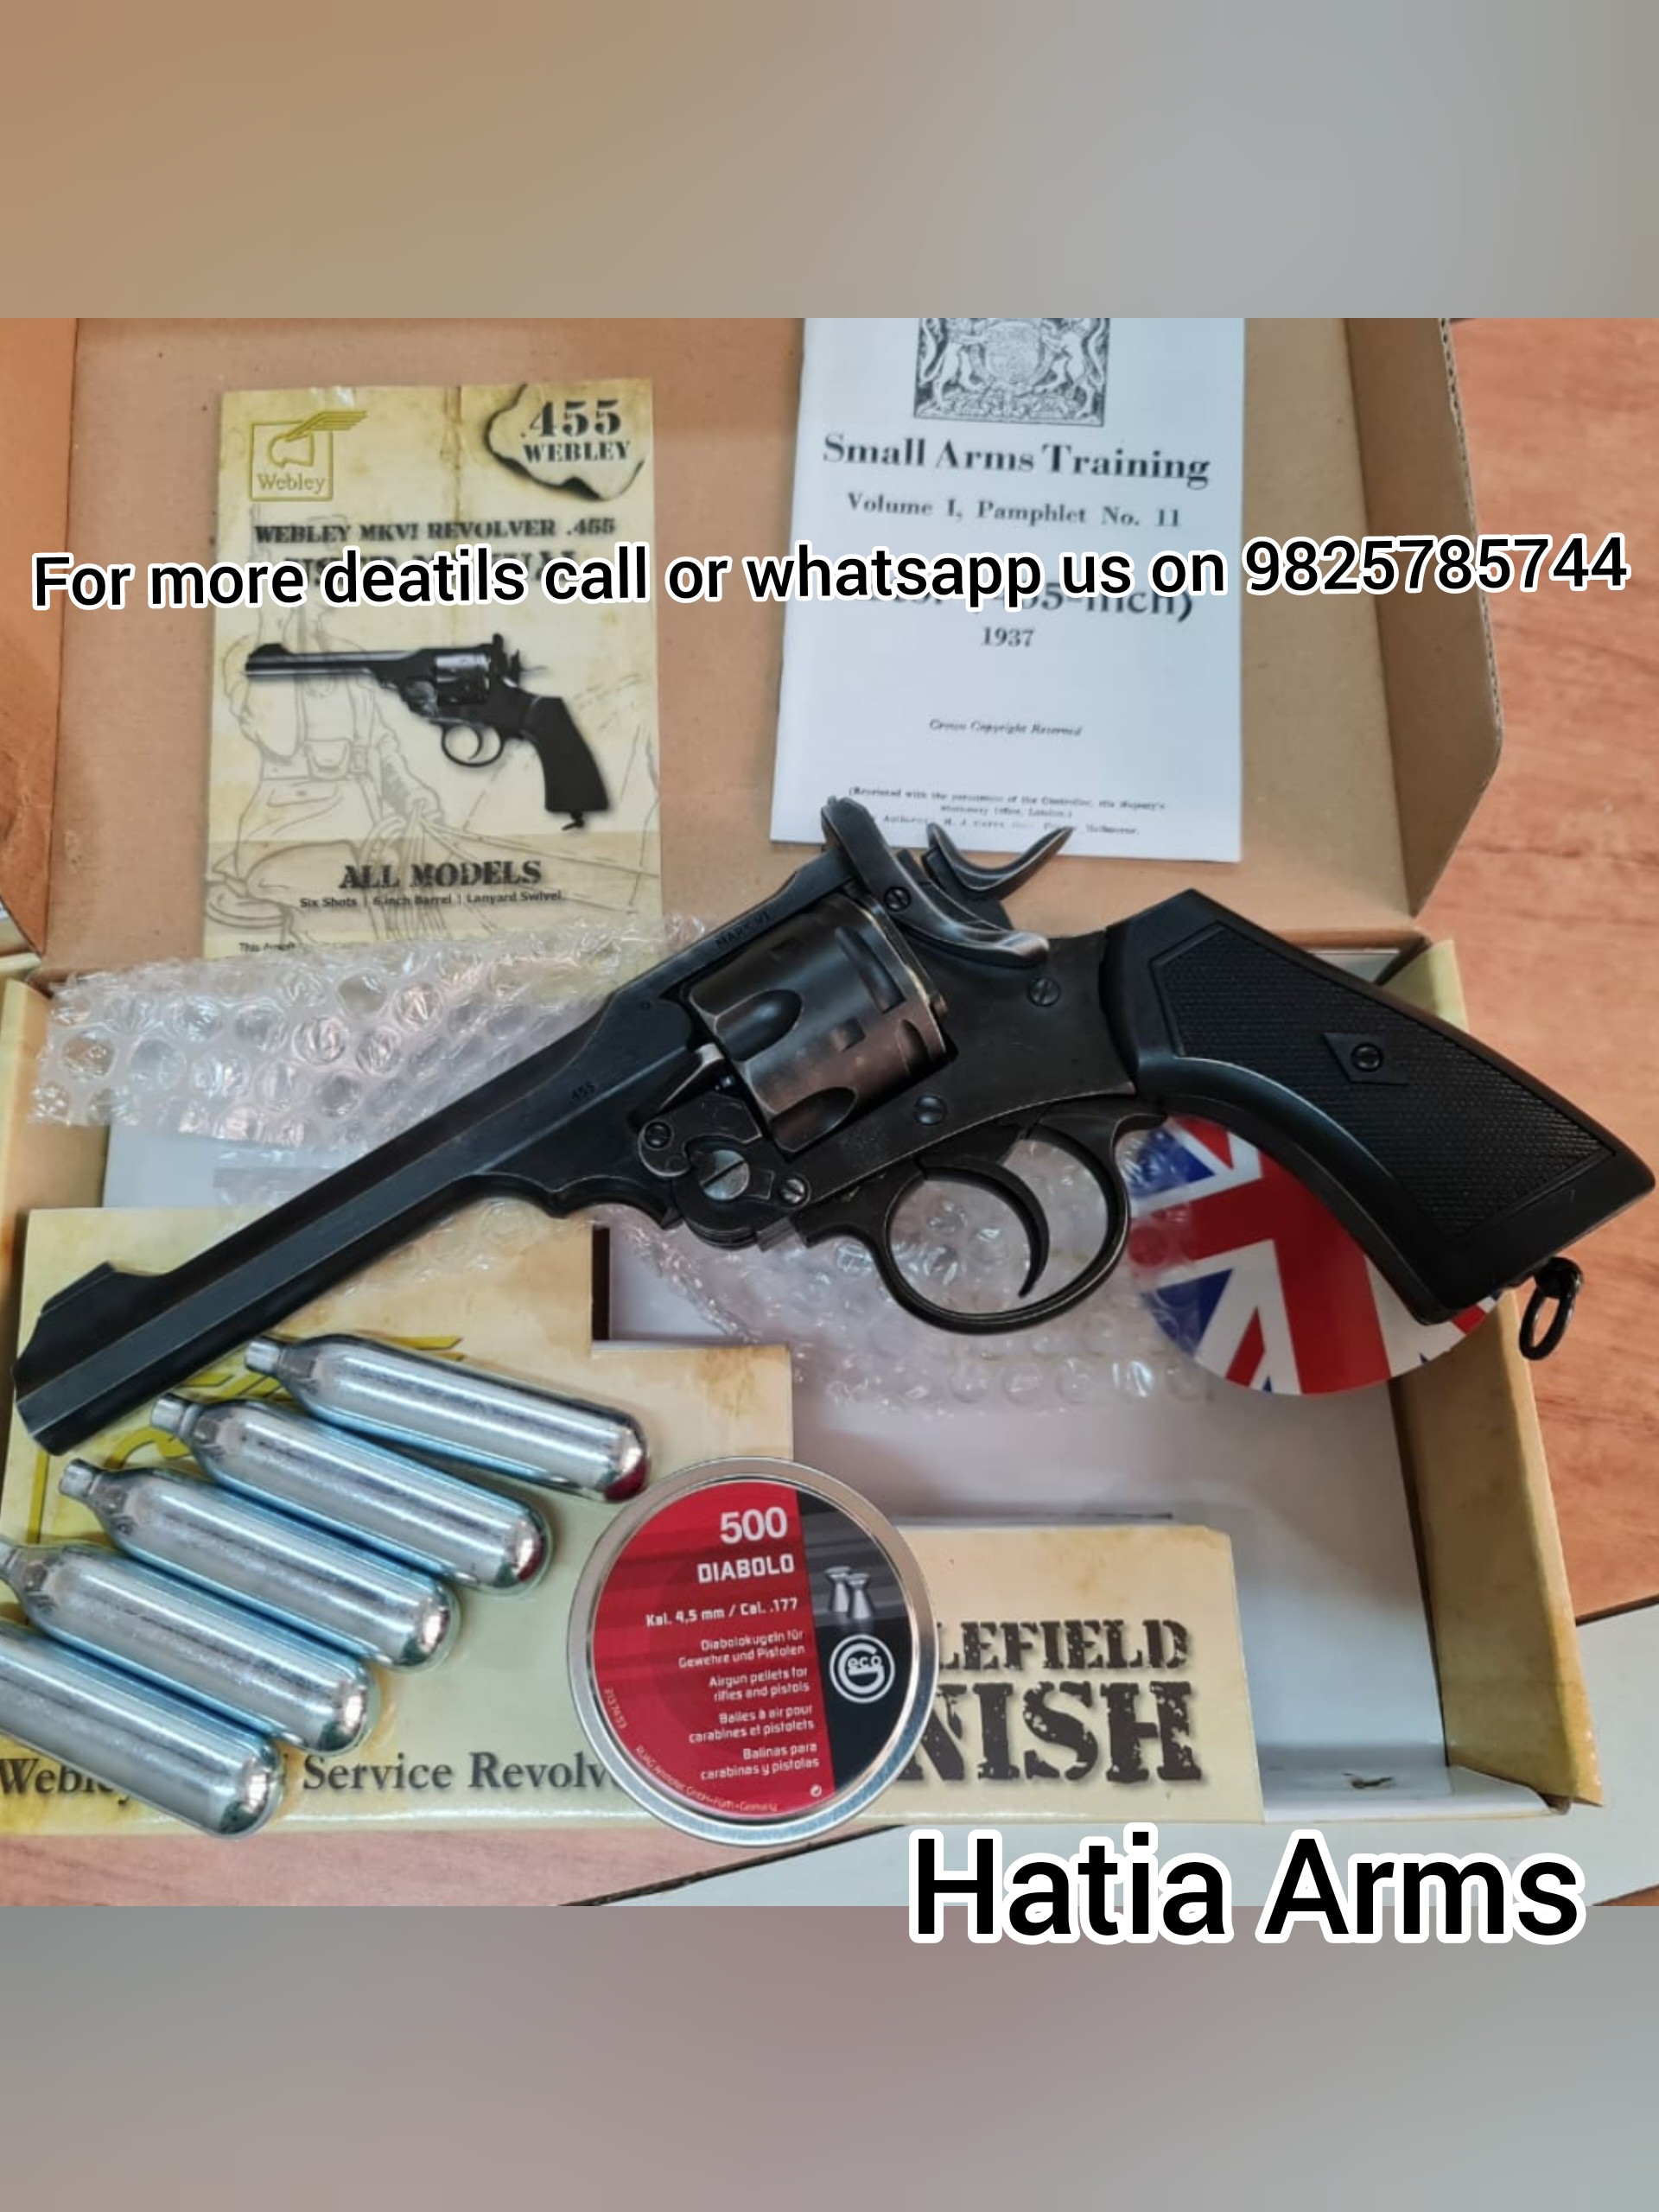 GAMO PR 725 Co2 pellet revolver by Airsoft gun india